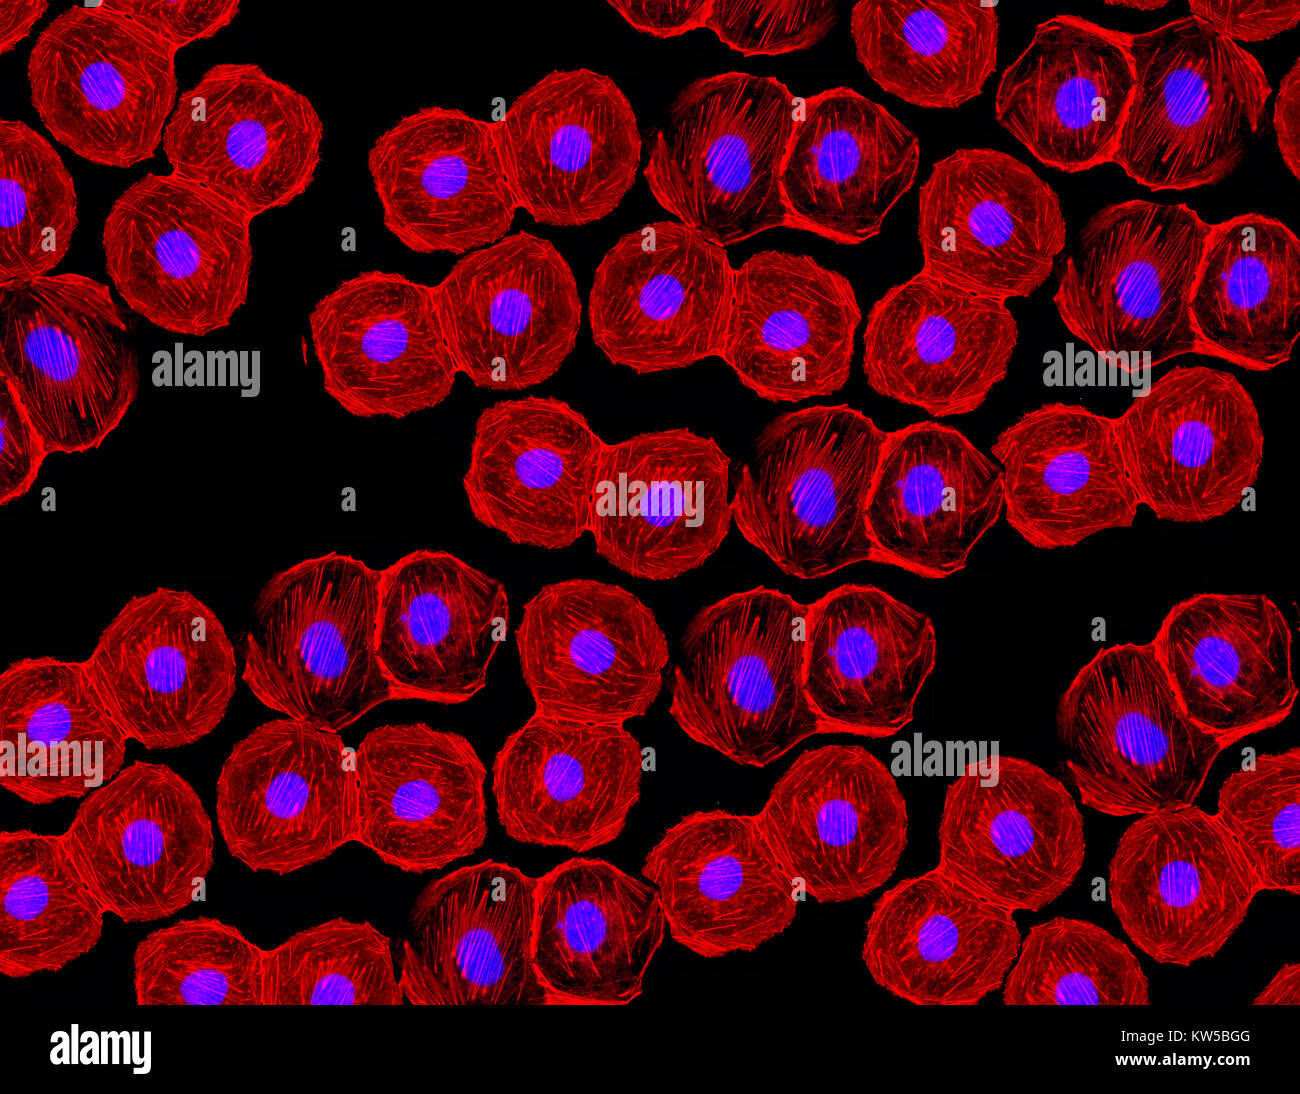 Image fluorescente de cellules souches humaines colorées avec des marqueurs d'anticorps monoclonaux sous la microscopie montrant des noyaux en bleu et des microtubules en rouge Banque D'Images